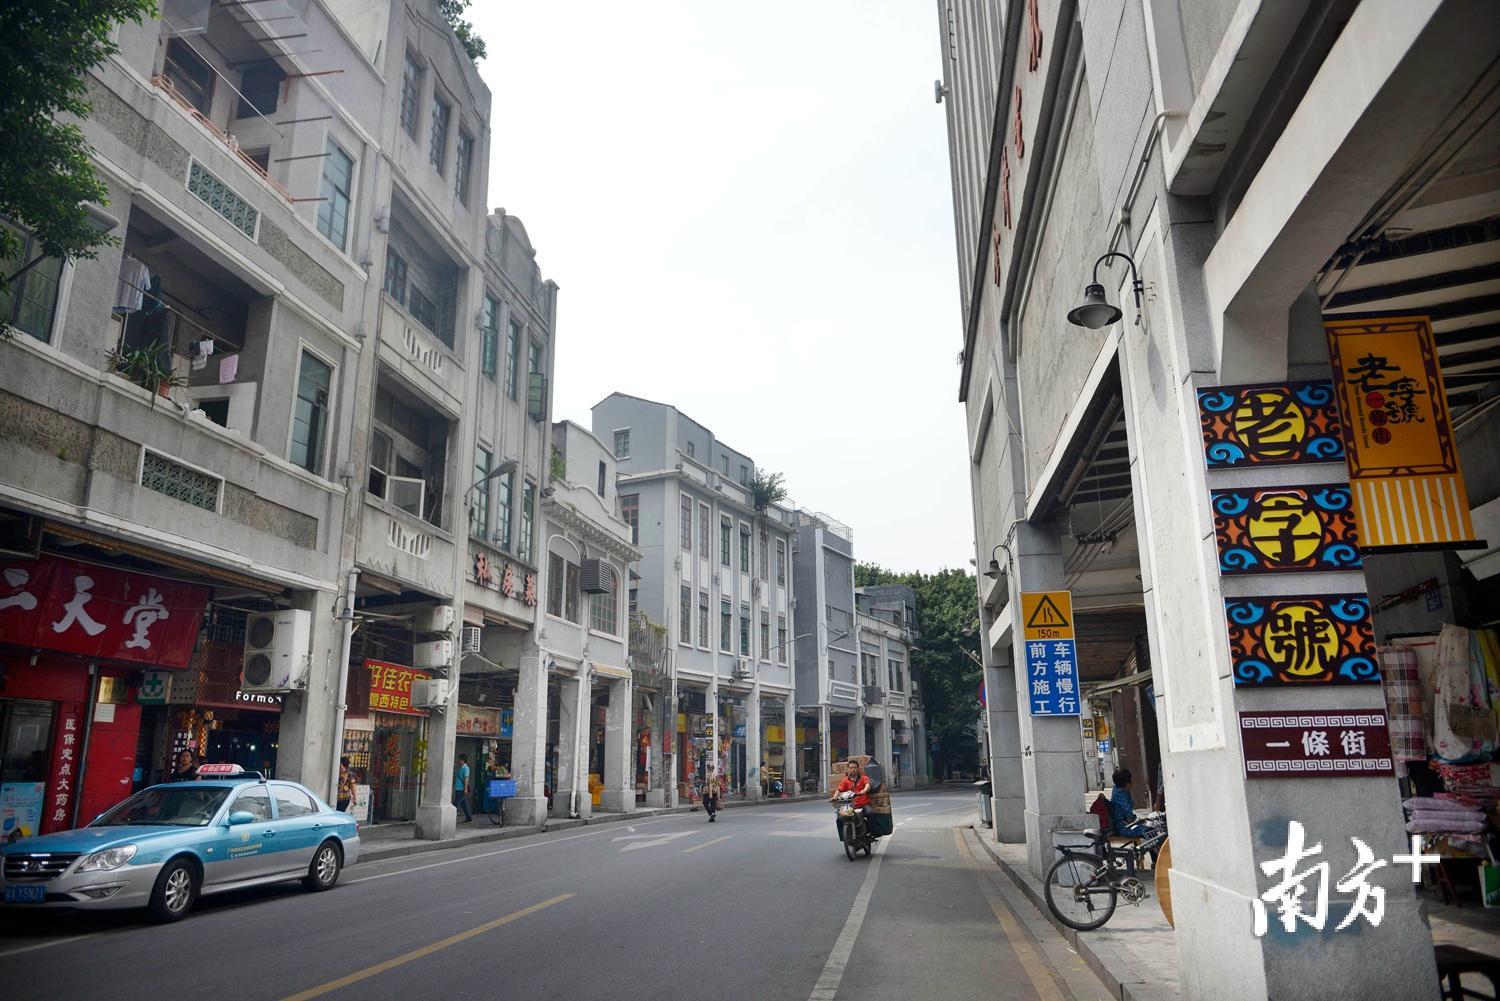 大隐于广州最美老街的永庆坊:来到西关,寻找岭南文化的本源